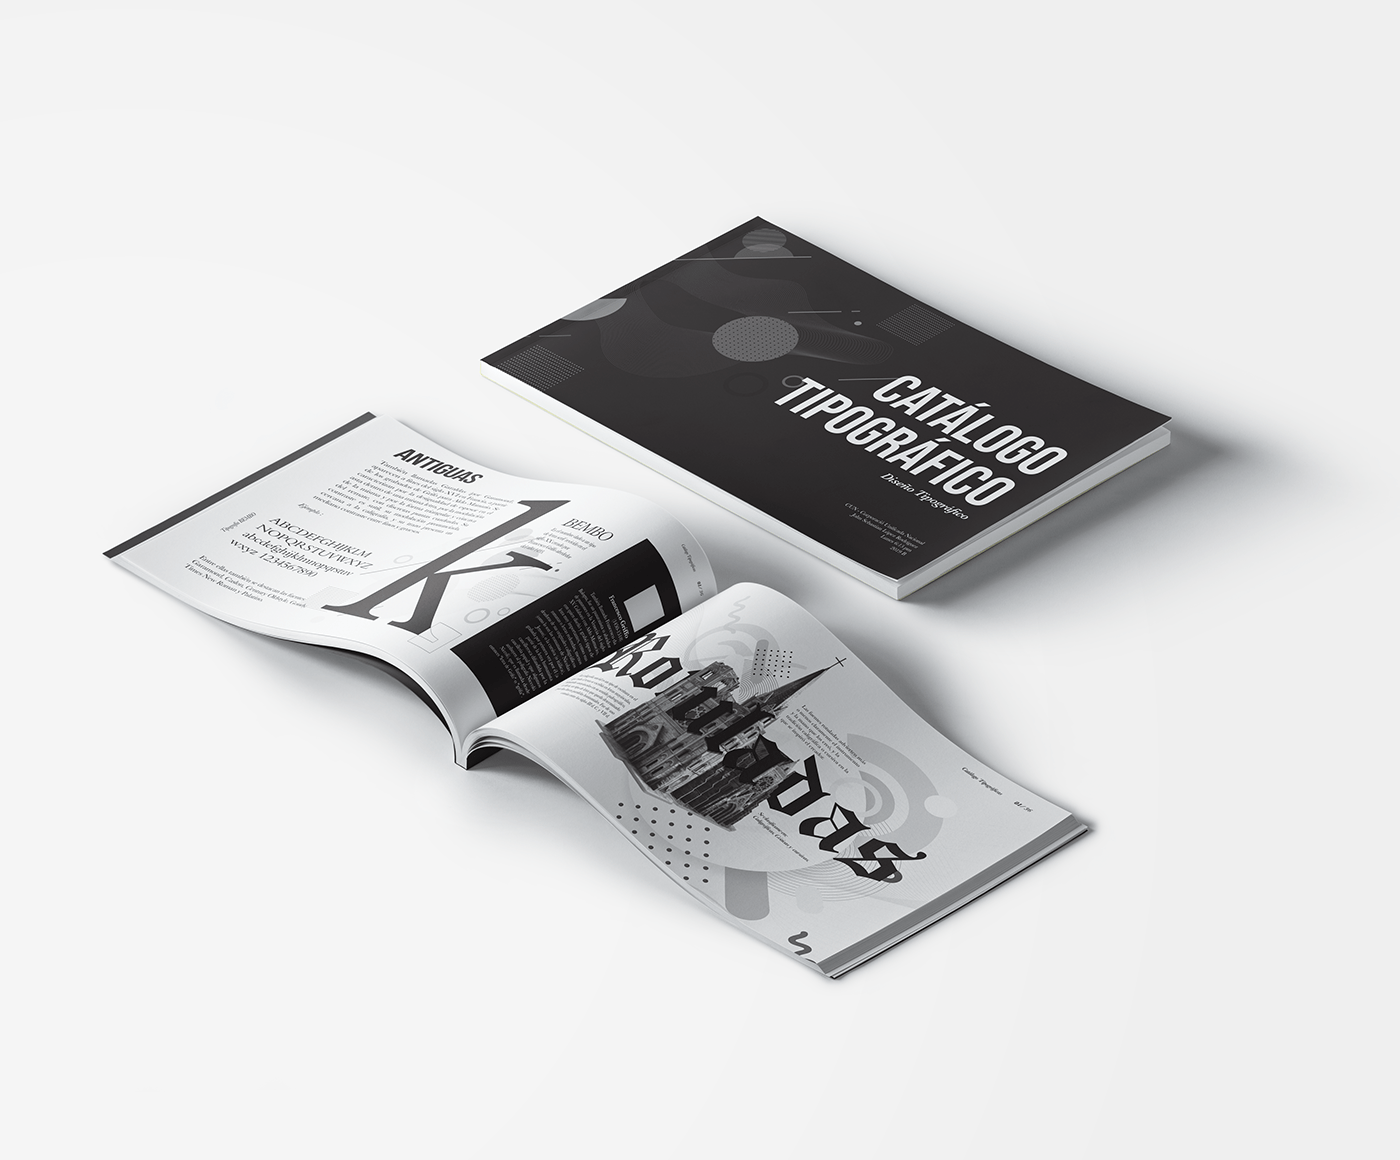 Diseño editorial Johnse rodriguez catalogo johnse Catálogo tipográfico